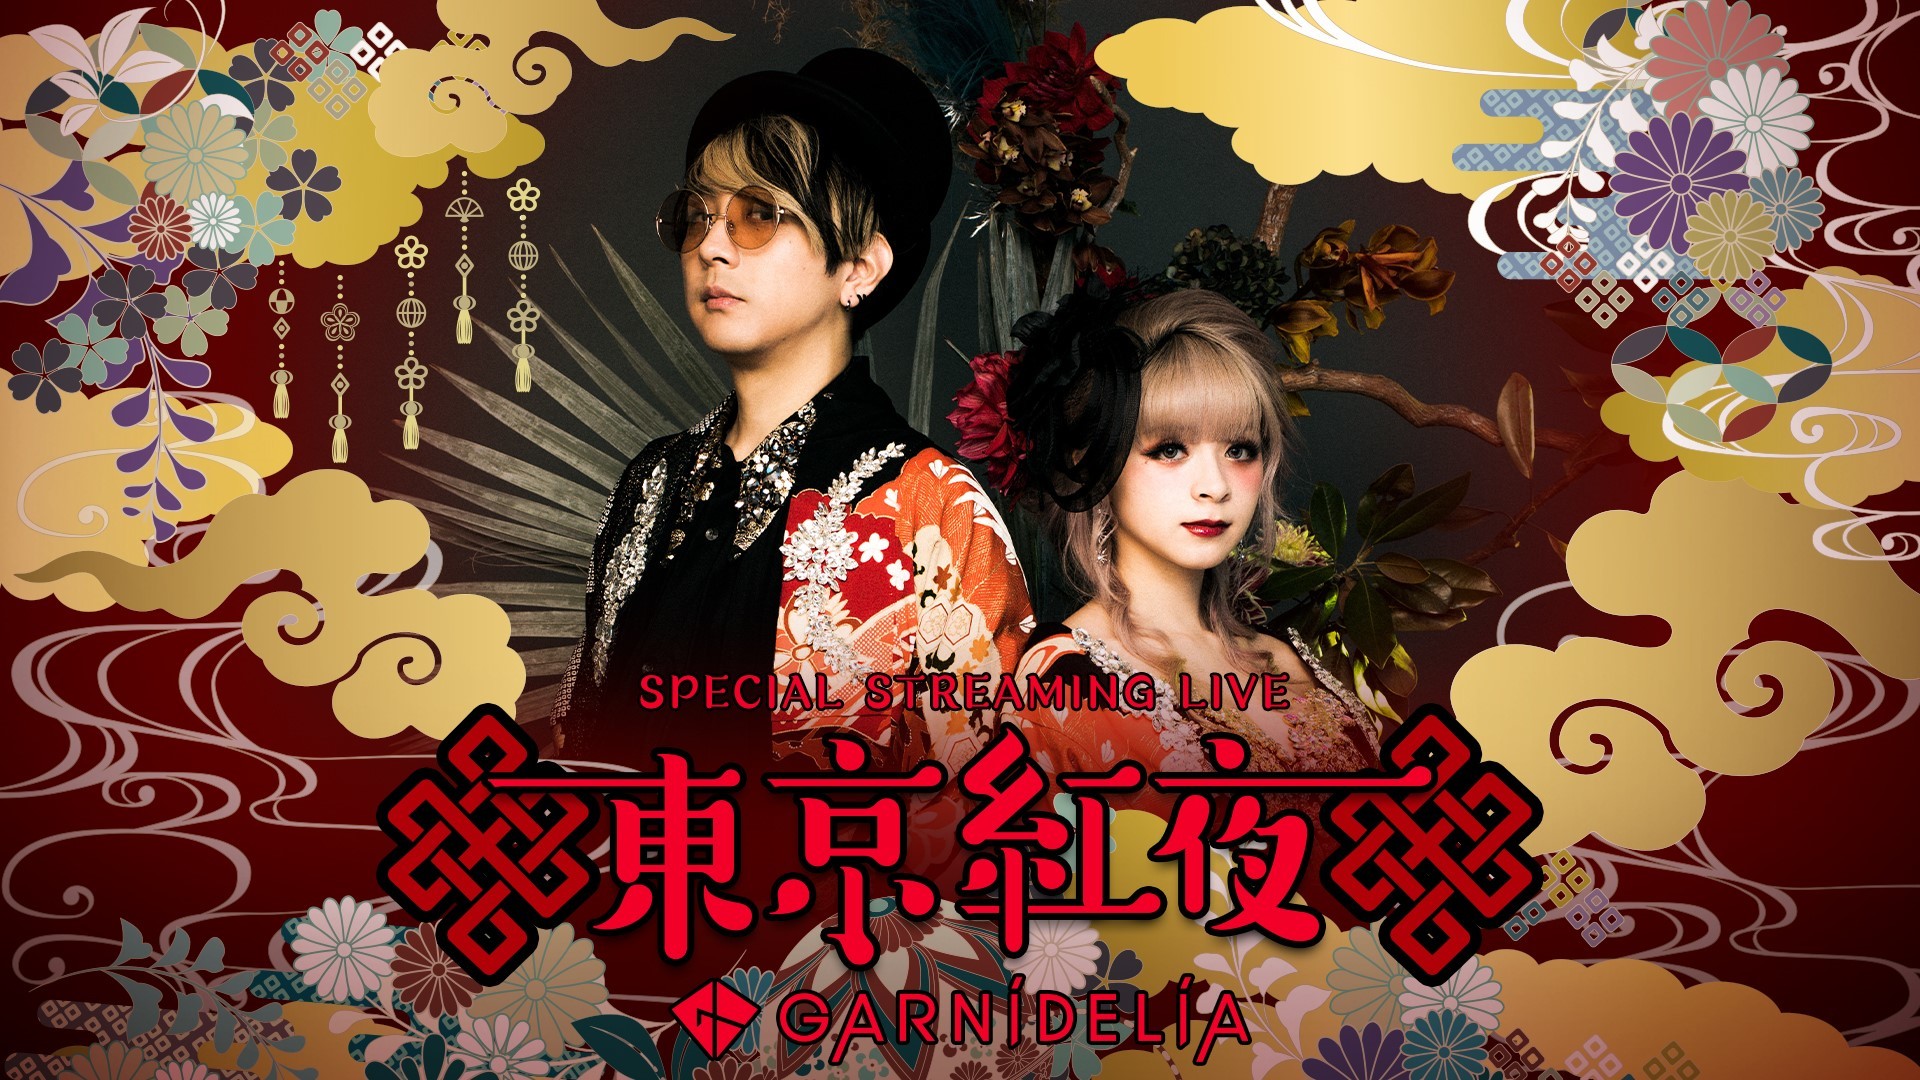 画像 Garnidelia 新曲 Star Trail の配信 ストリーミングライブ2nd Stage 東京紅夜 の開催を発表 の画像2 2 Spice エンタメ特化型情報メディア スパイス